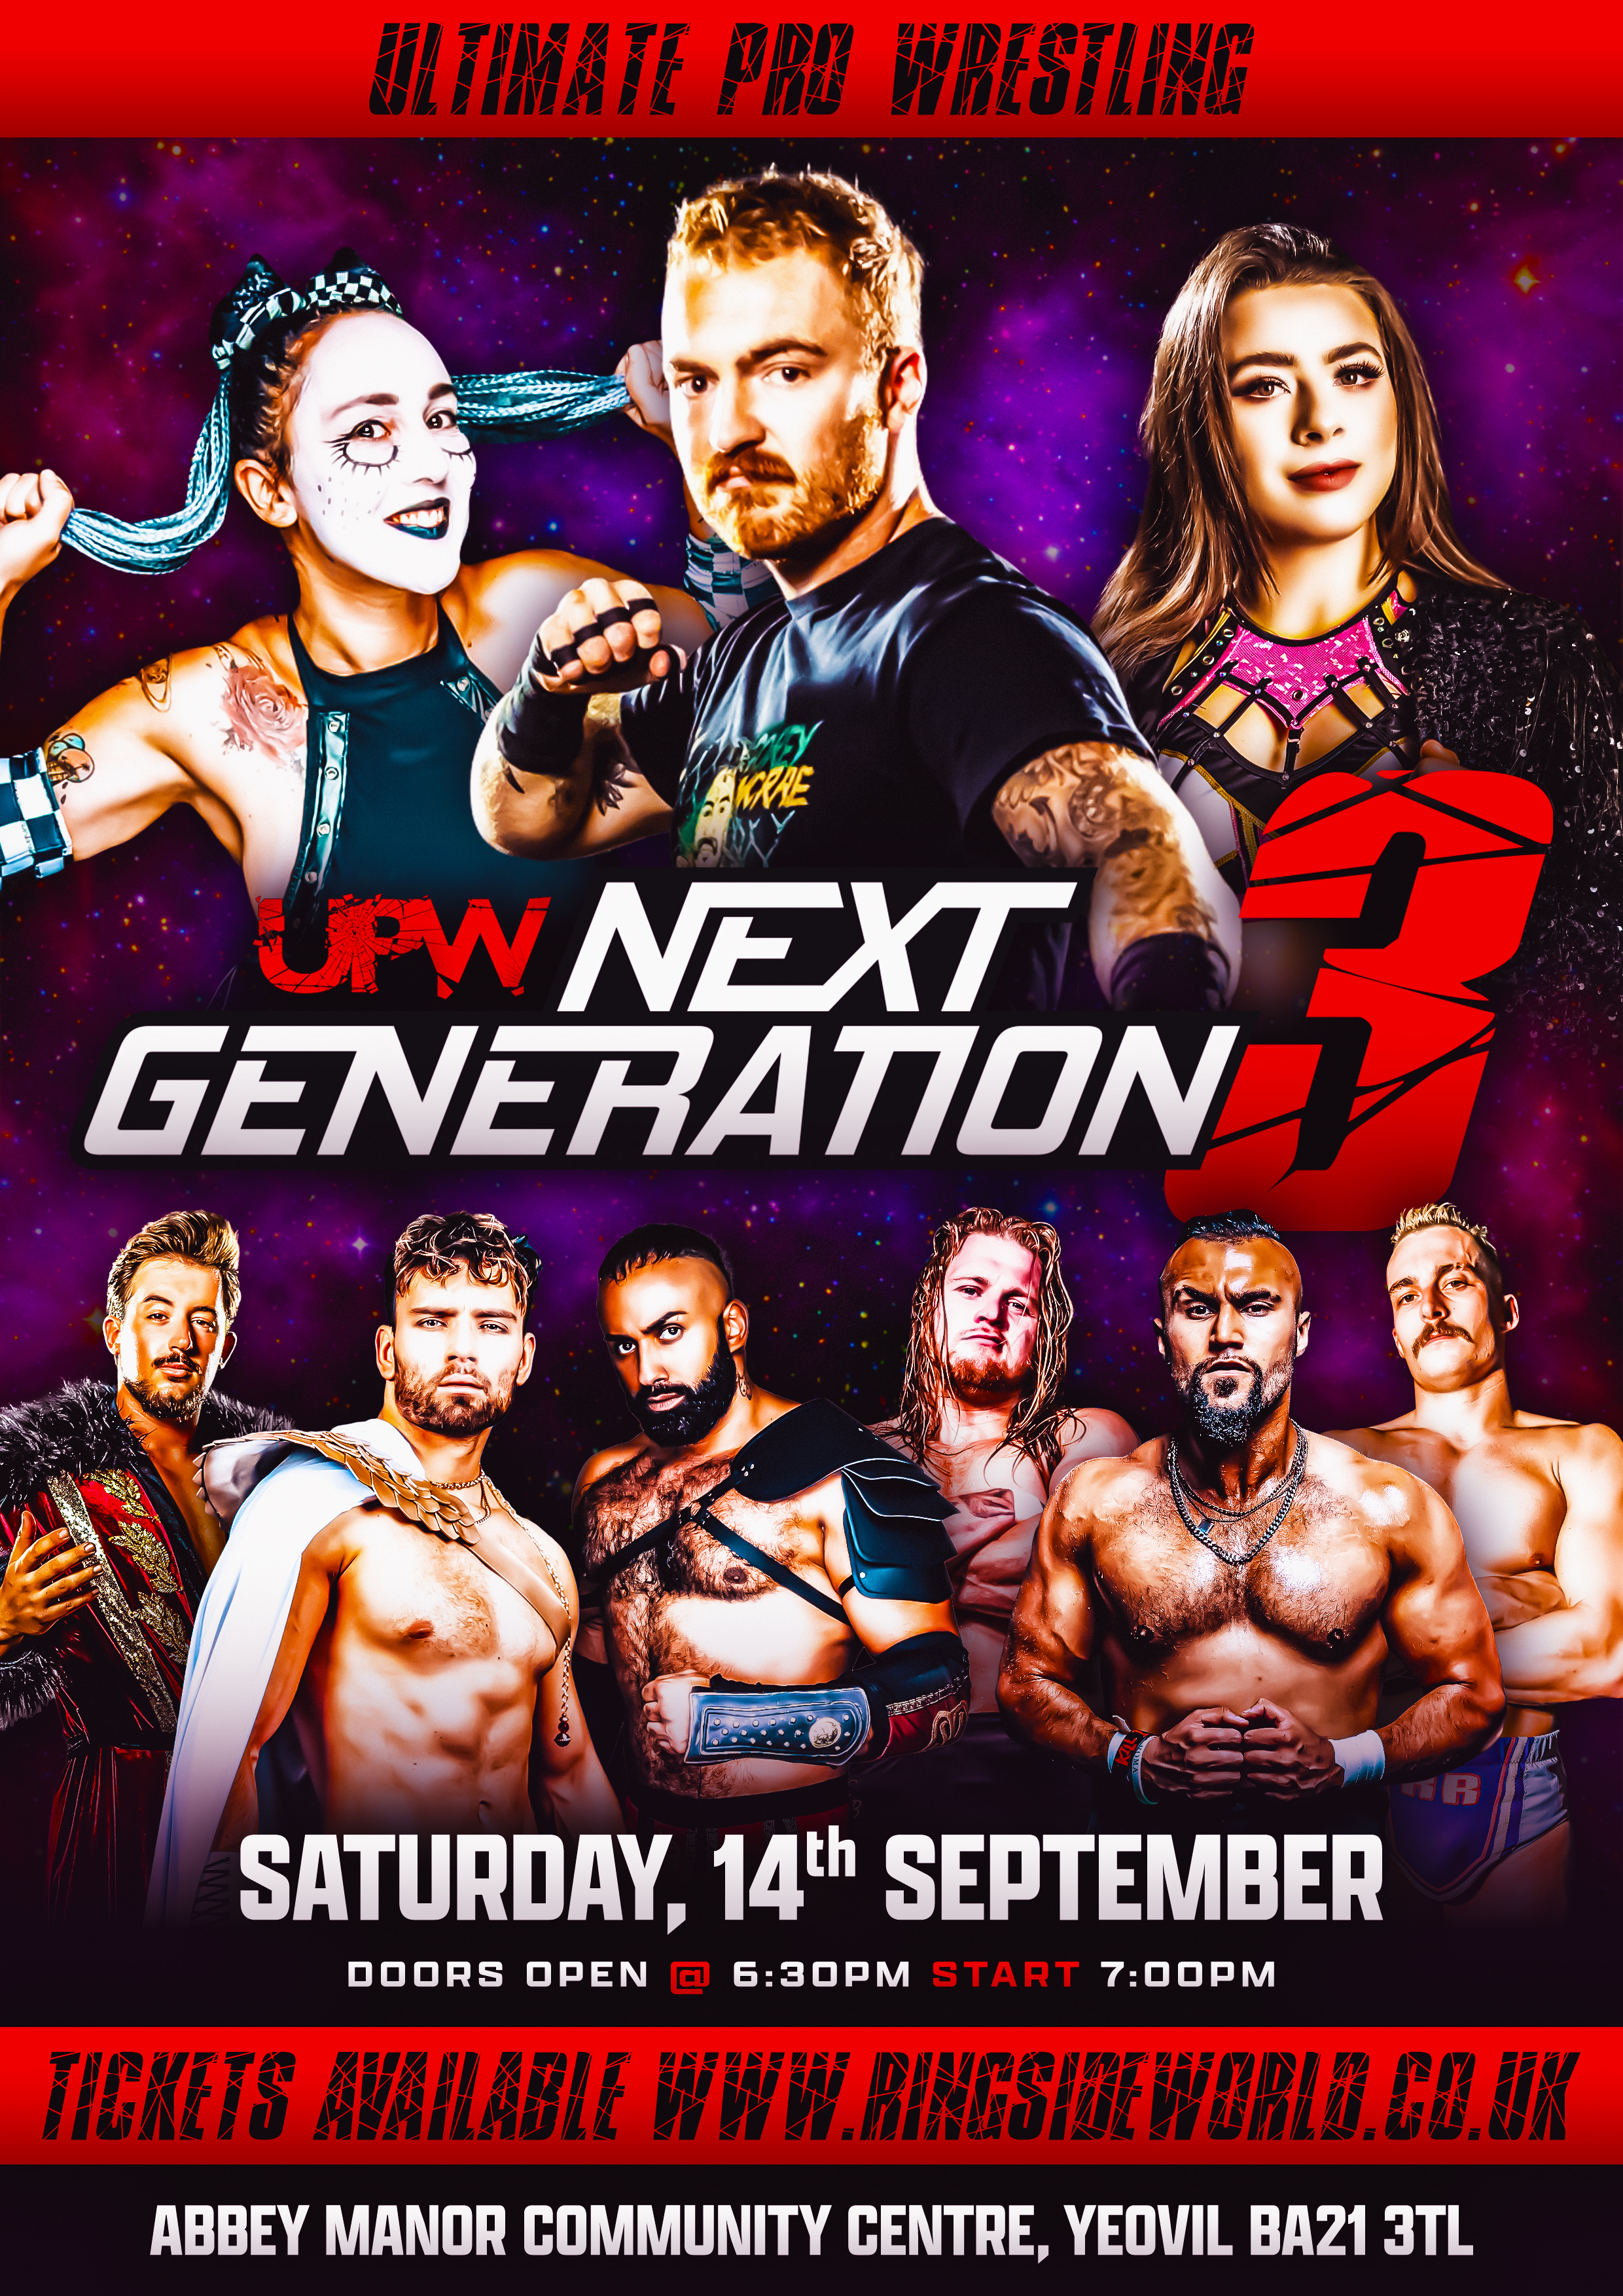 UPW Next Generation 3 event description image